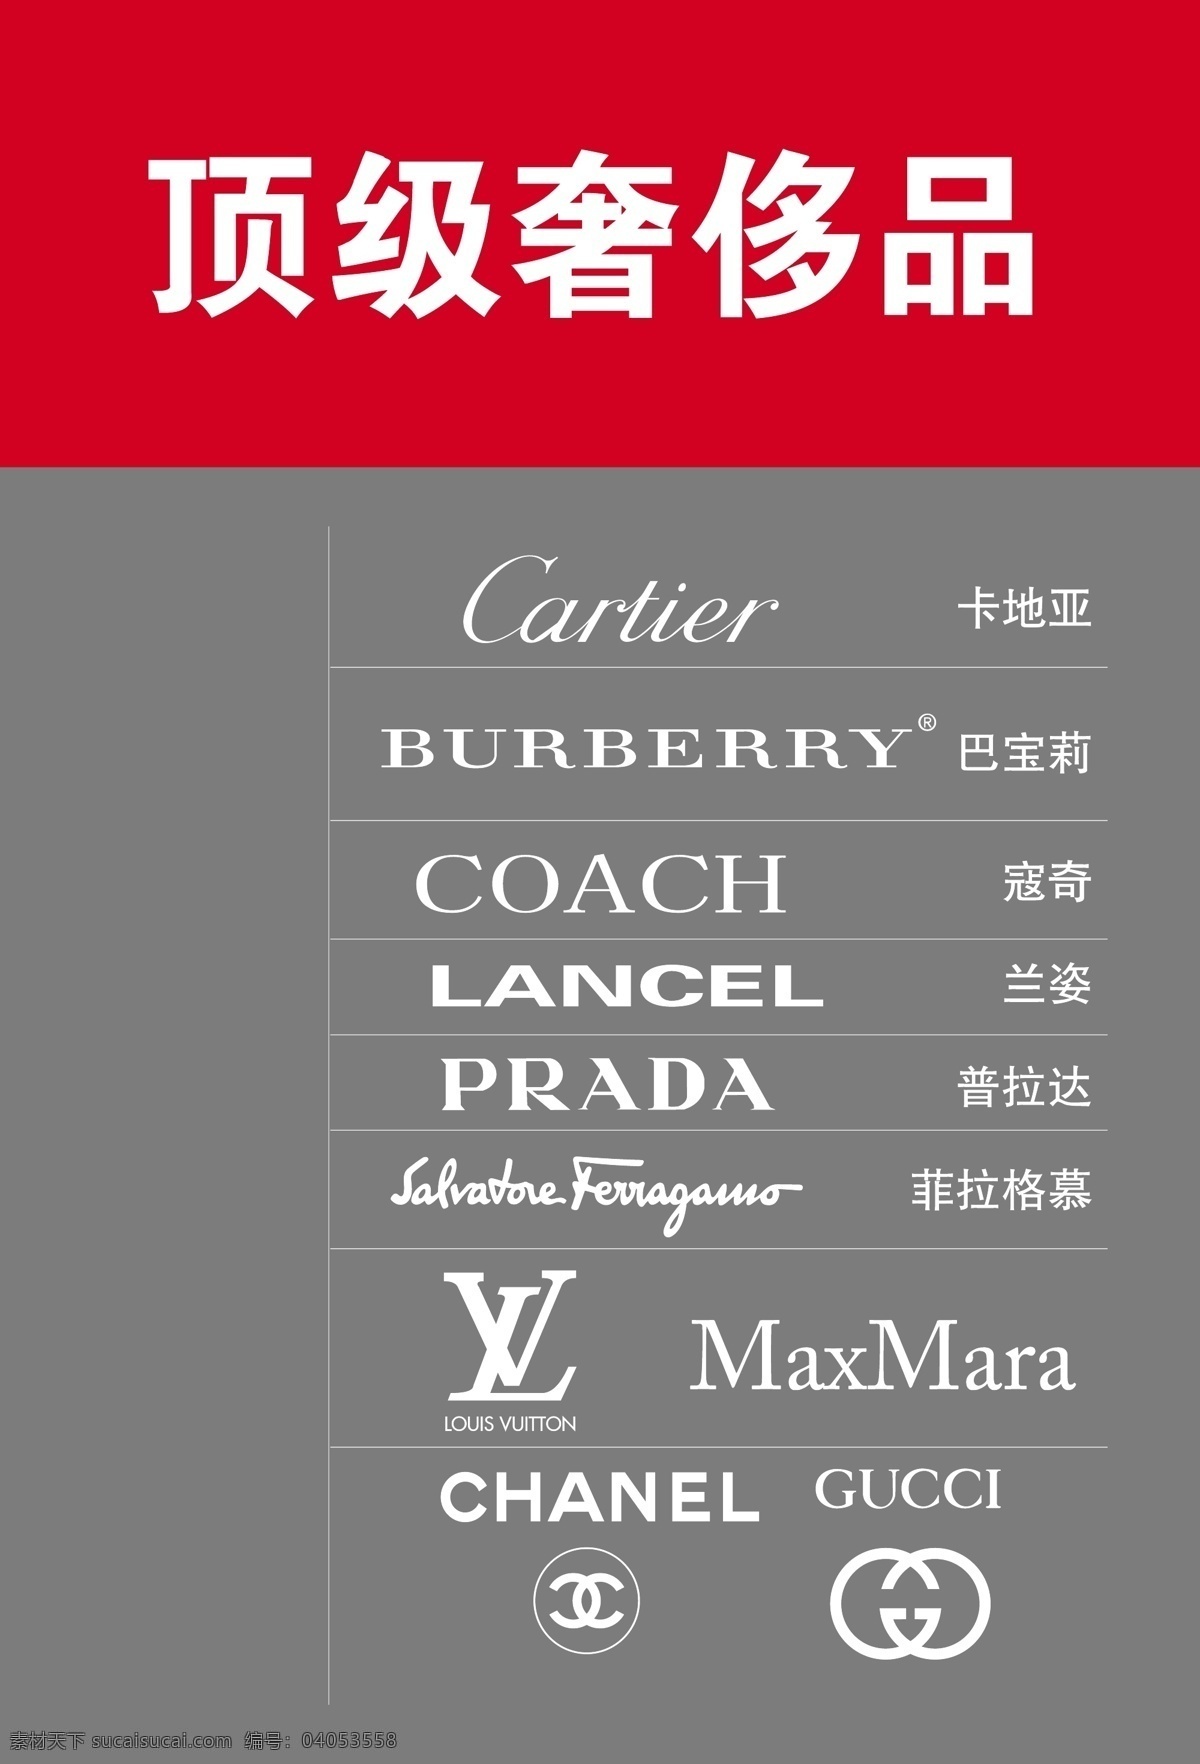 世界名牌标志 卡地亚 巴宝莉 寇奇 兰姿 prada maxmara gucct lv chanel 菲拉格慕 企业 logo 标志 标识标志图标 矢量